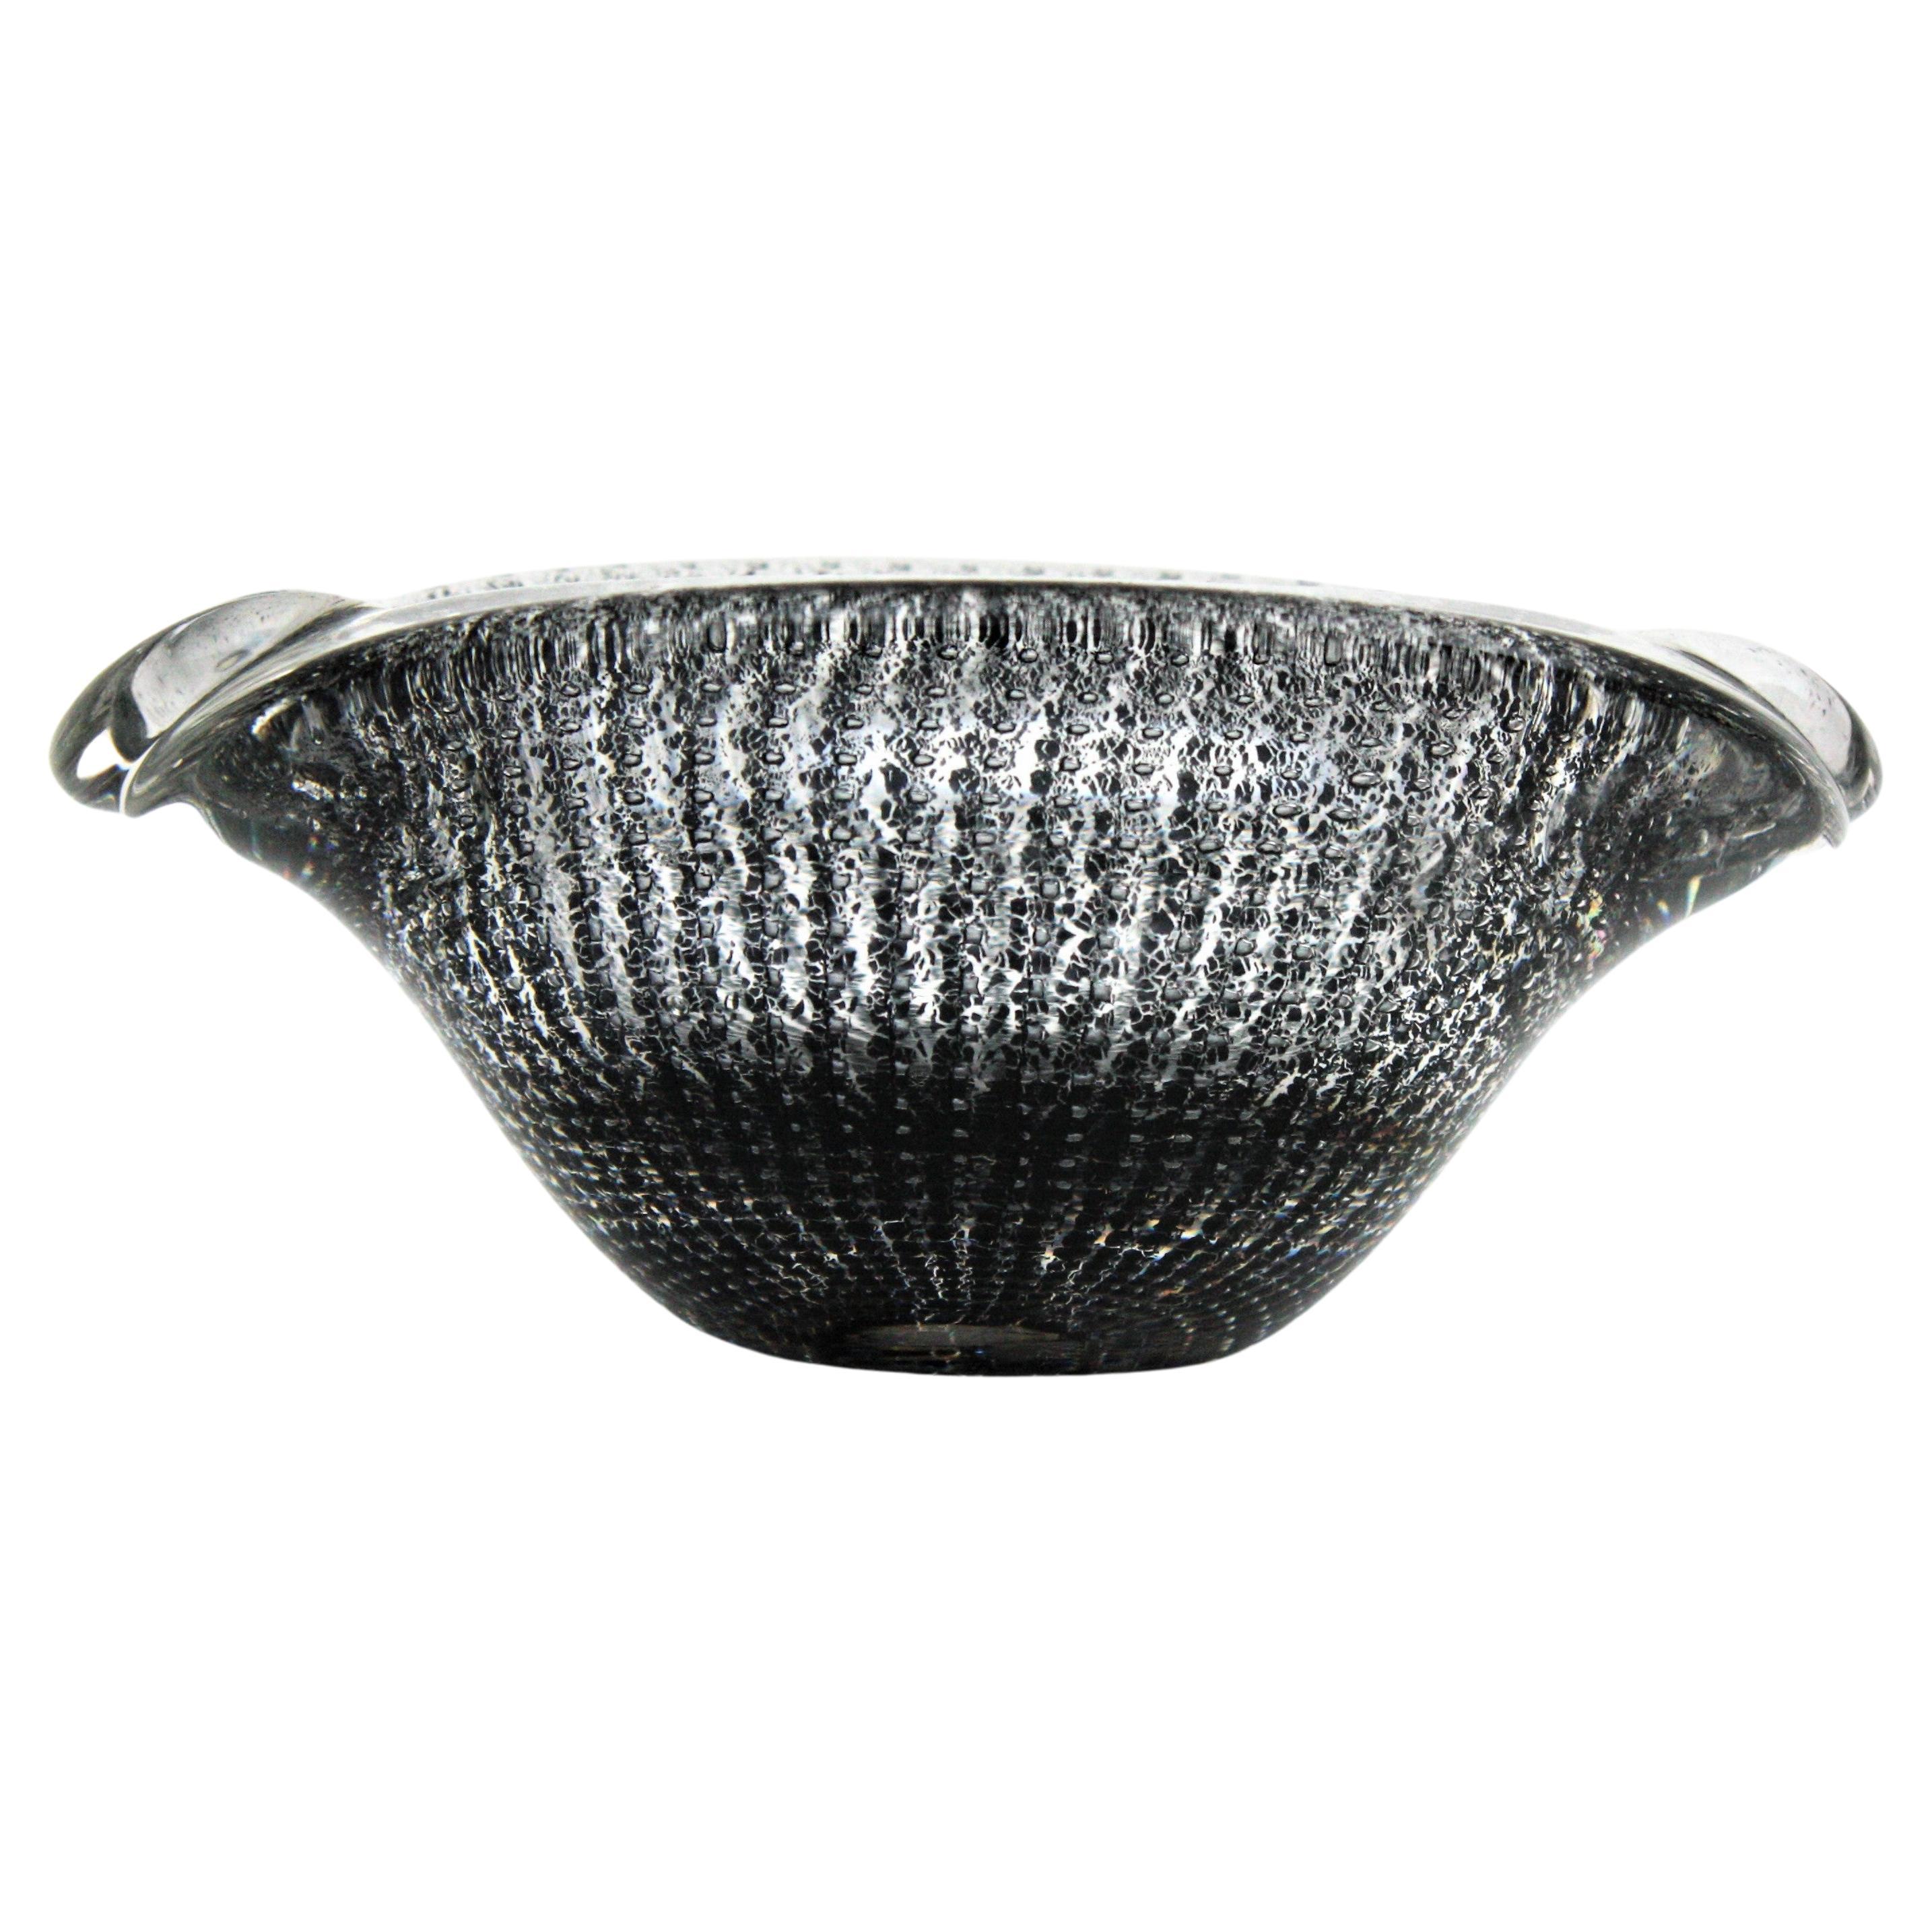 Archimede Seguso Murano Bullicante Black & Clear Art Glass Bowl or Ashtray For Sale